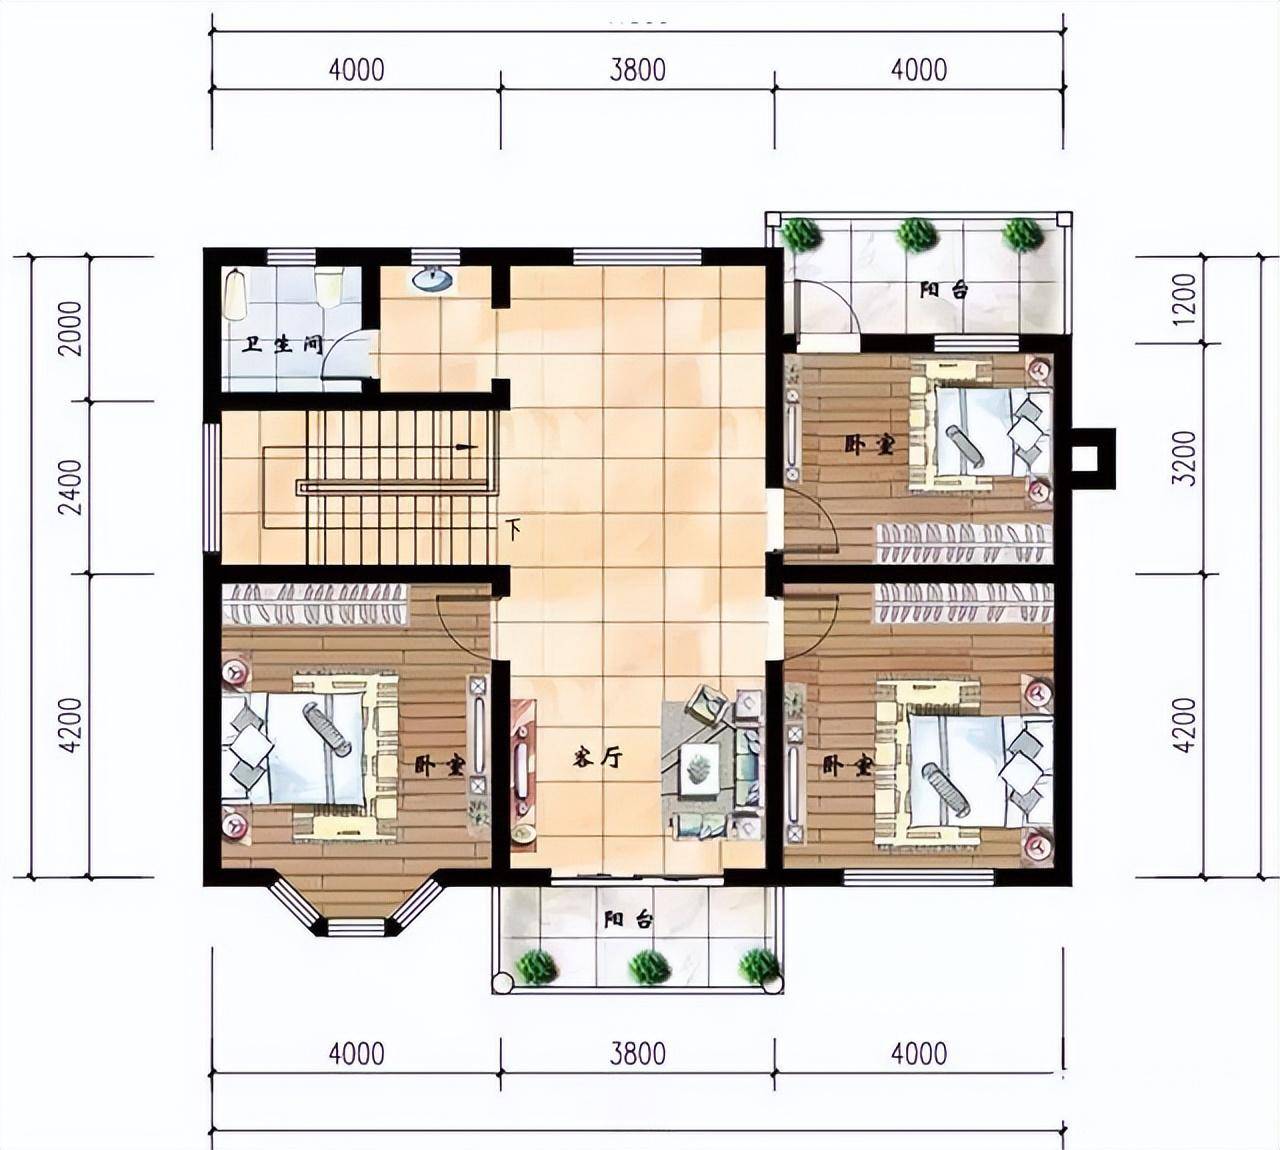 15款90平米二层别墅设计图,小户型的舒心,精致的优雅农村自建房